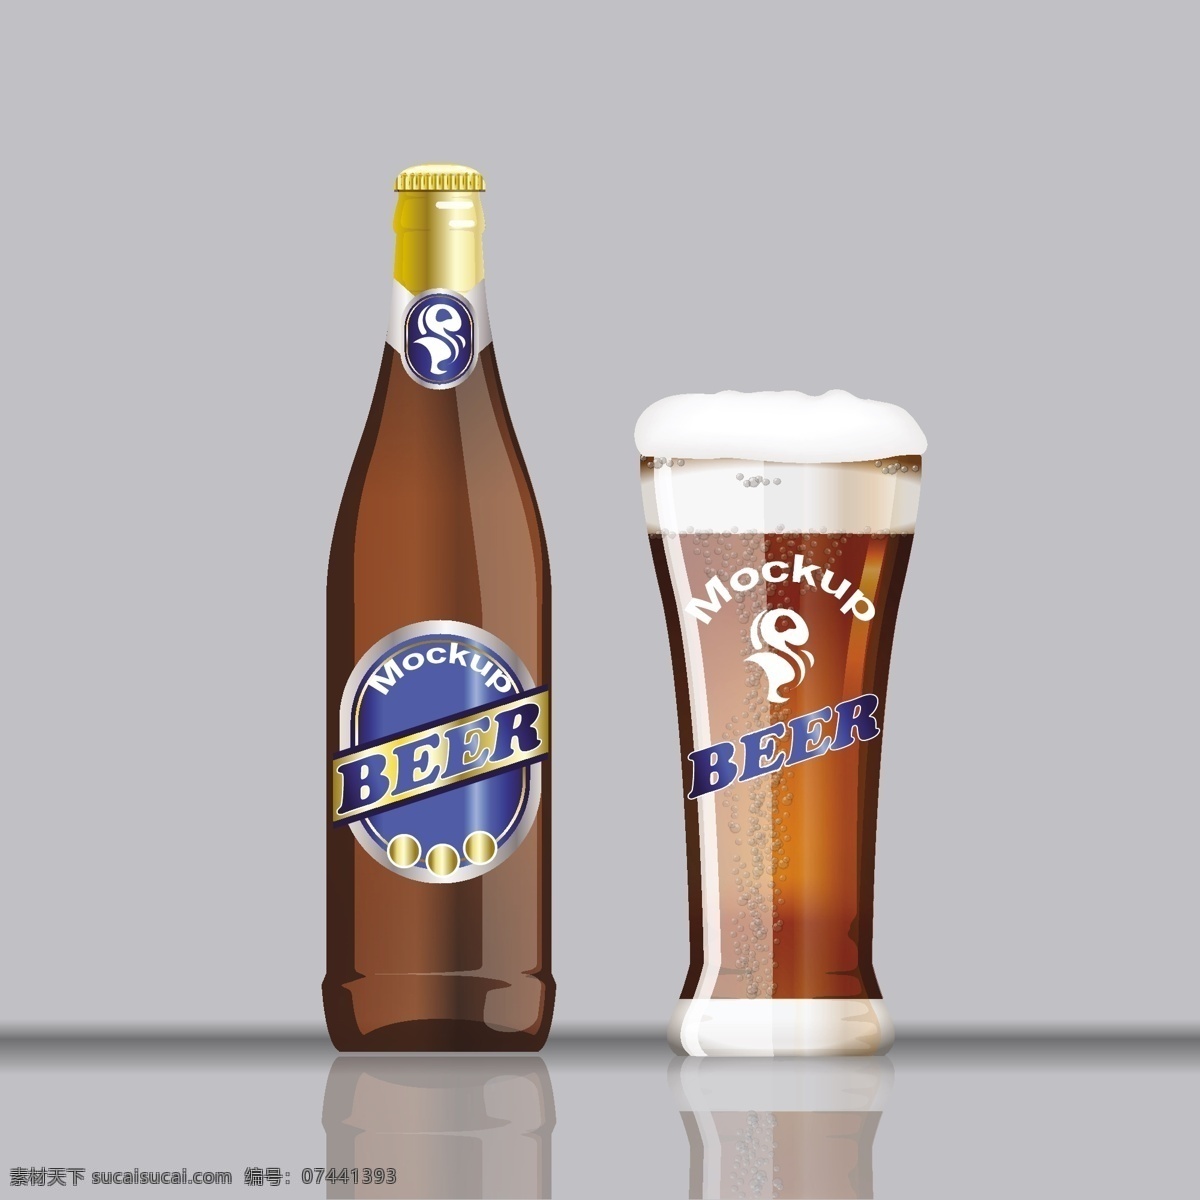 各种酒 酒 玻璃 德国啤酒 啤酒杯 啤酒 玻璃杯 饮料 冷饮 啤酒节 酒精 品酒 白酒 酒瓶 玻璃瓶 饮料瓶 饮品 汽水